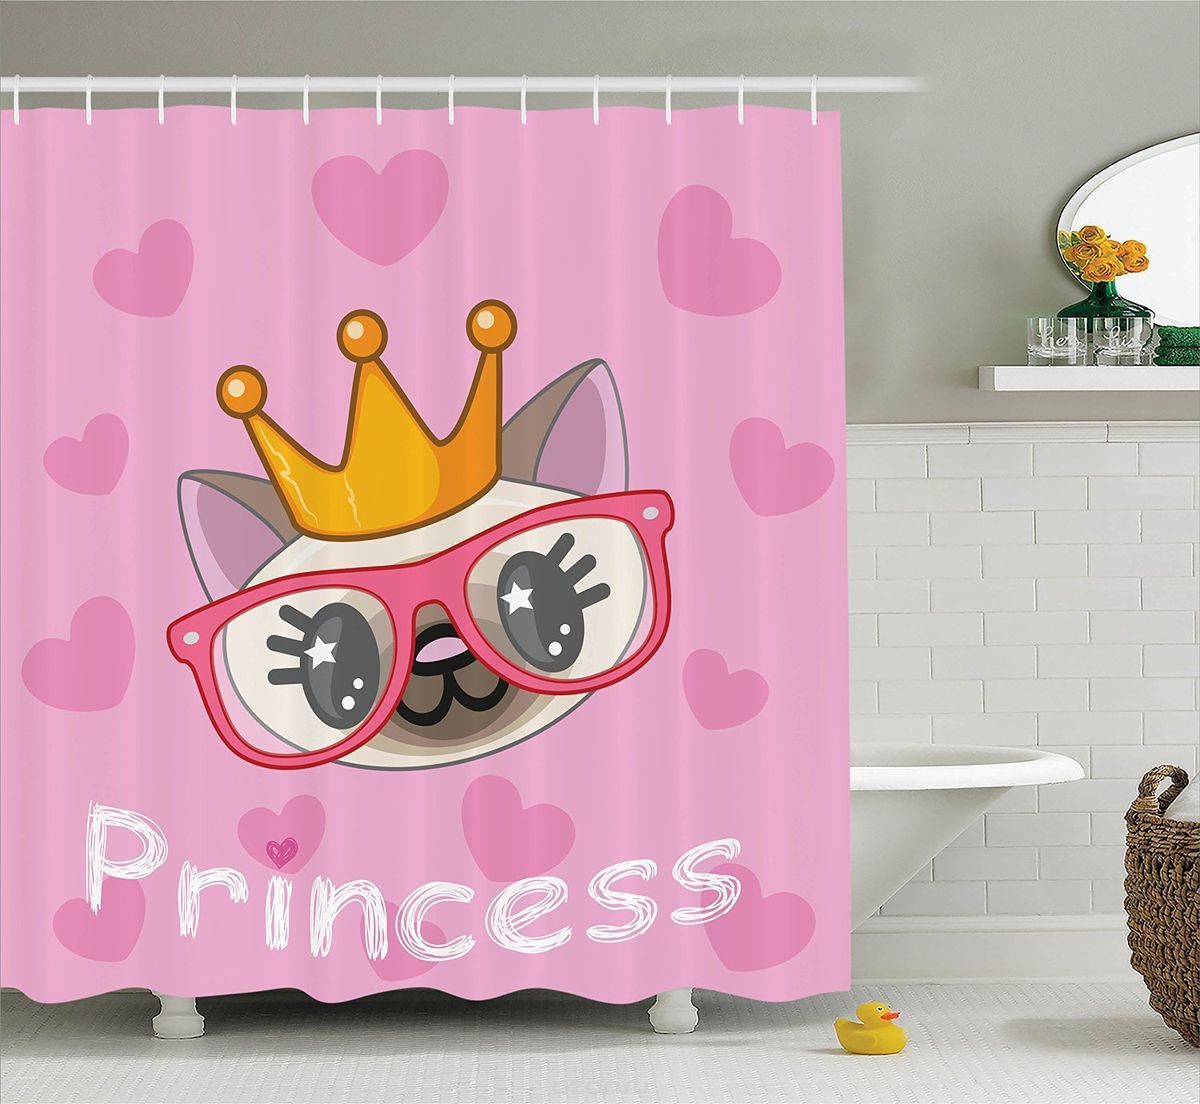 Фотоштора для ванной Magic Lady "Принцесса кошек", 180х200 см, п/э 100%   2067368